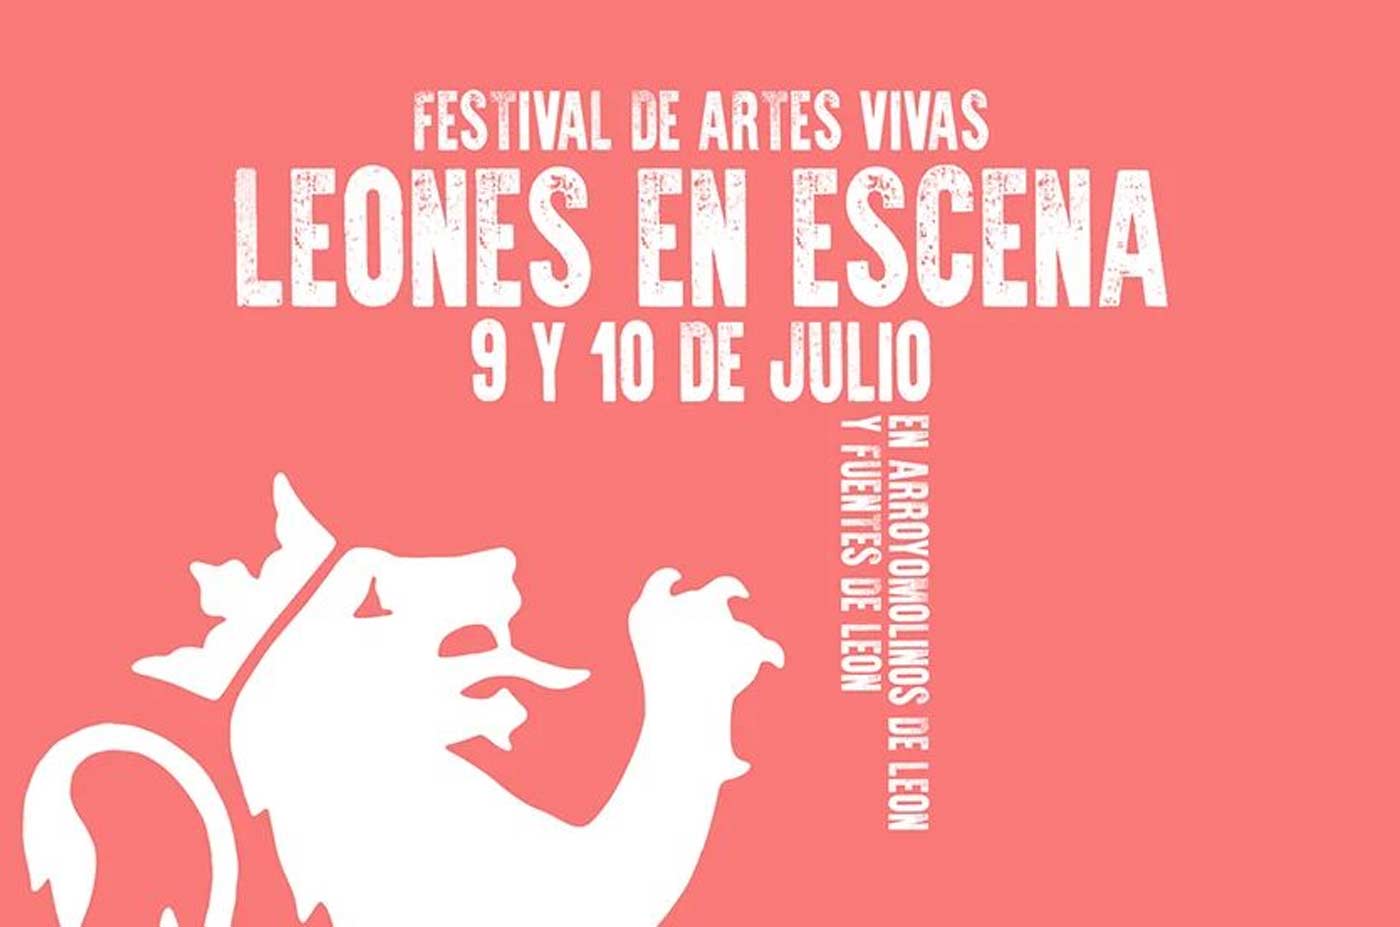 festival de artes vivas leones en escena 9 y 10 de julio 2022 Arroyomolinos de Leon Fuentes de Leon julio